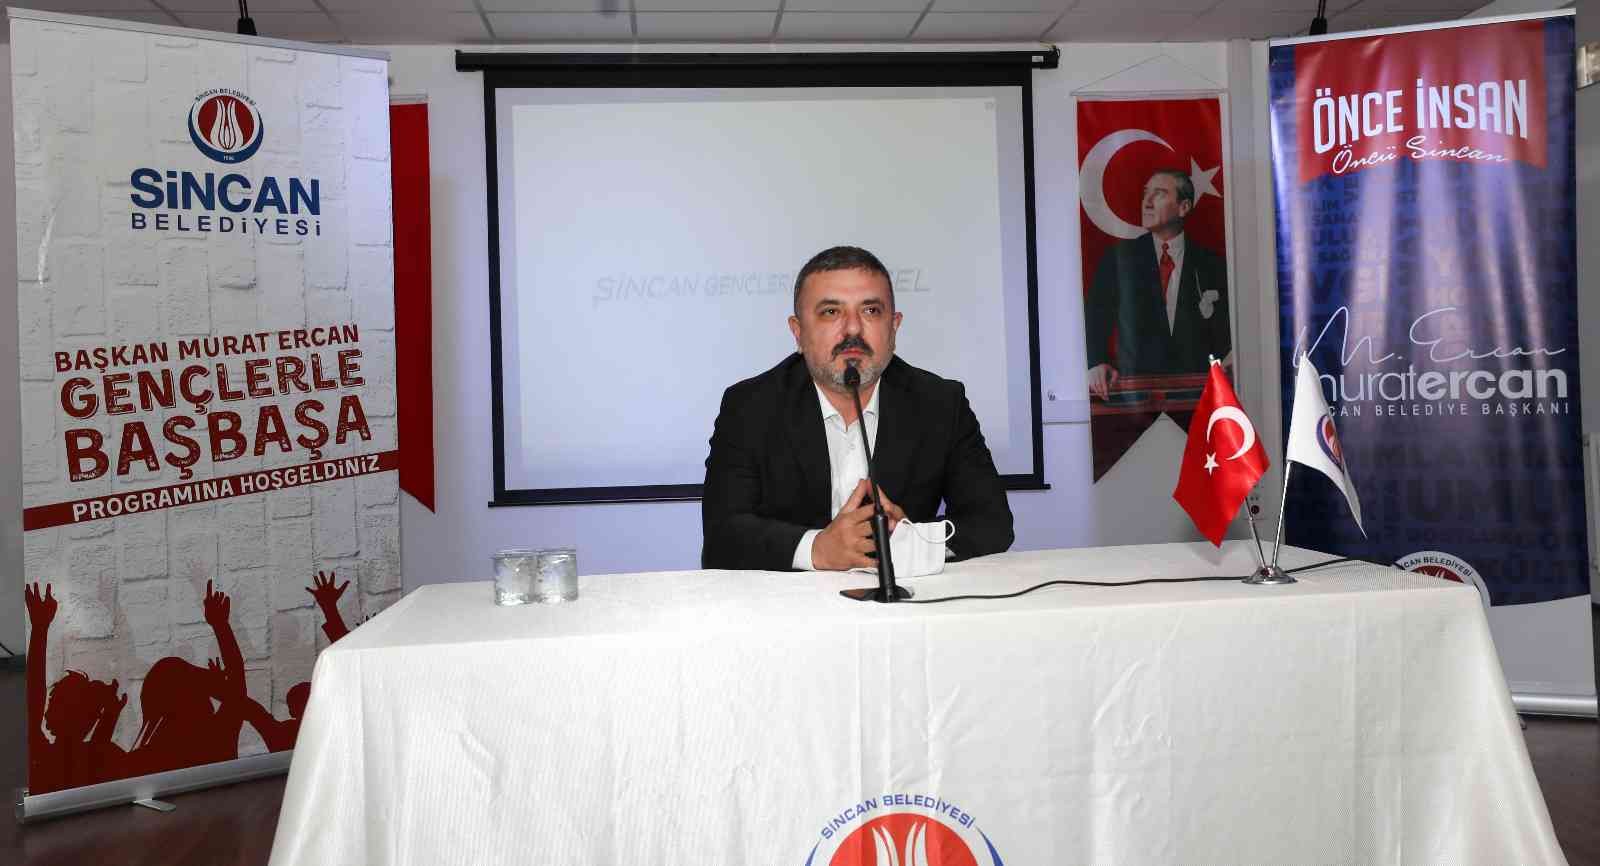 Sincan Belediye Başkanı Ercan “Gençlerle Baş Başa” programına devam ediyor